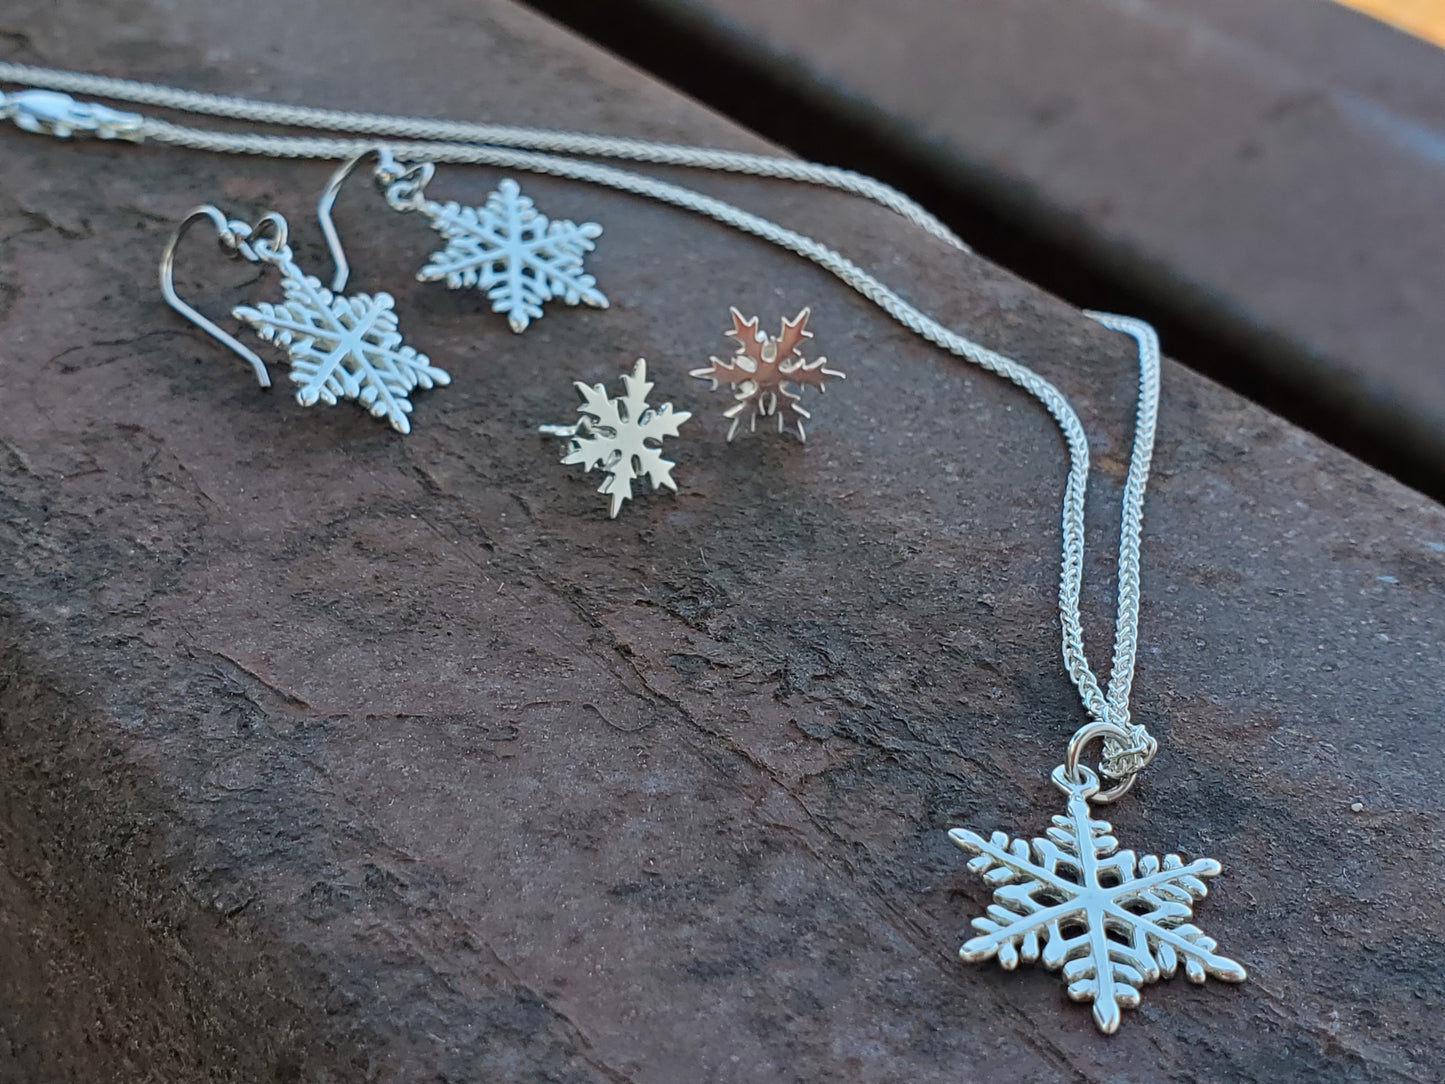 Frost: Dangle Snowflake Earrings, Earrings for Winter, Snowflake Jewelry, Western Dangle Earrings, Seasonal Jewelry